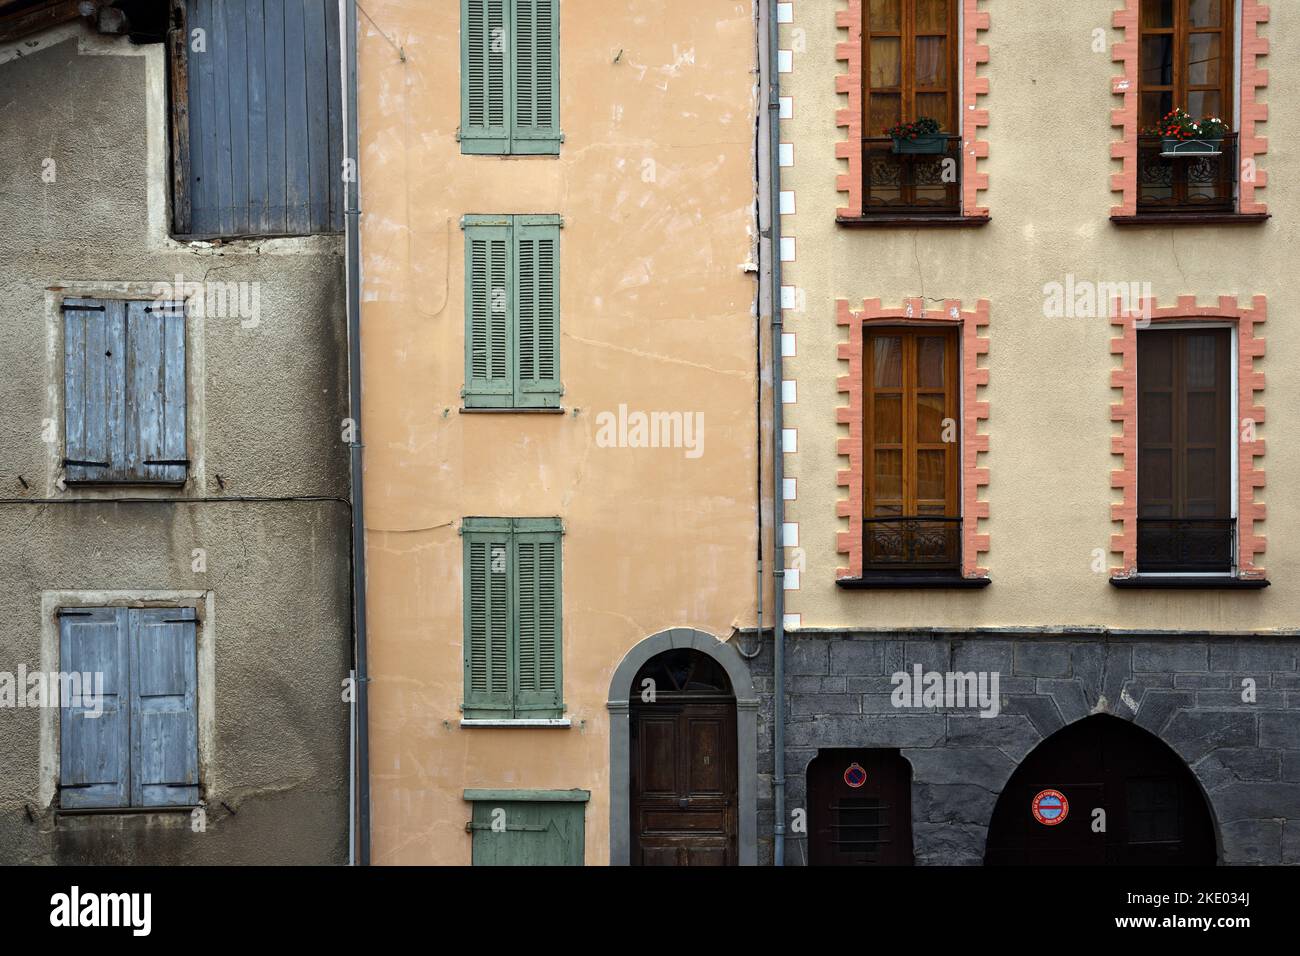 Motif de fenêtres et volets fermés des anciennes maisons ou immeubles d'appartements dans la vieille ville ou le quartier historique de Seyne-les-Alpes Alpes-de-haute-Provence France Banque D'Images